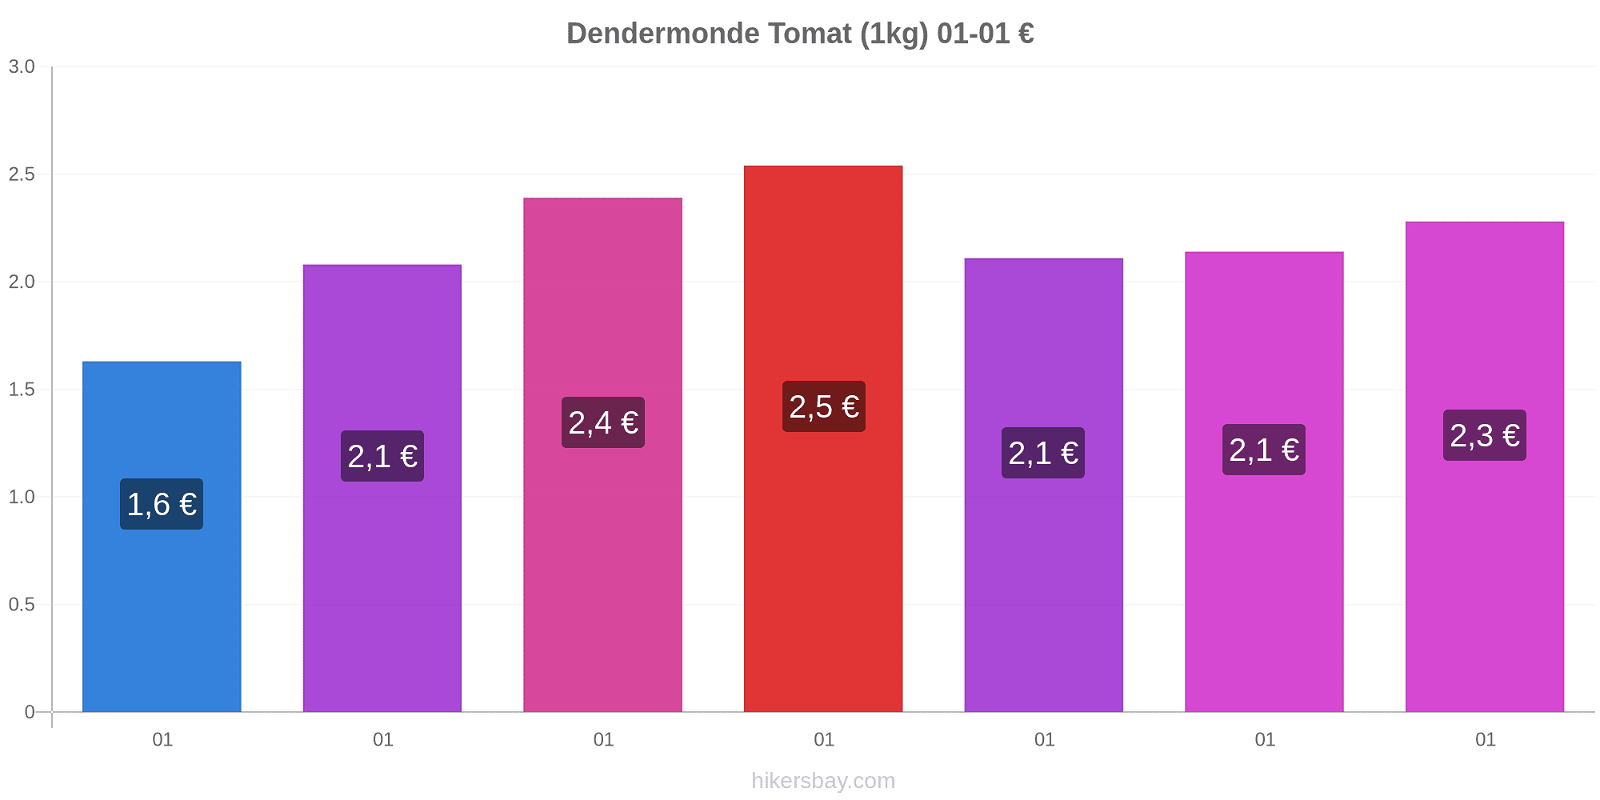 Dendermonde prisförändringar Tomat (1kg) hikersbay.com